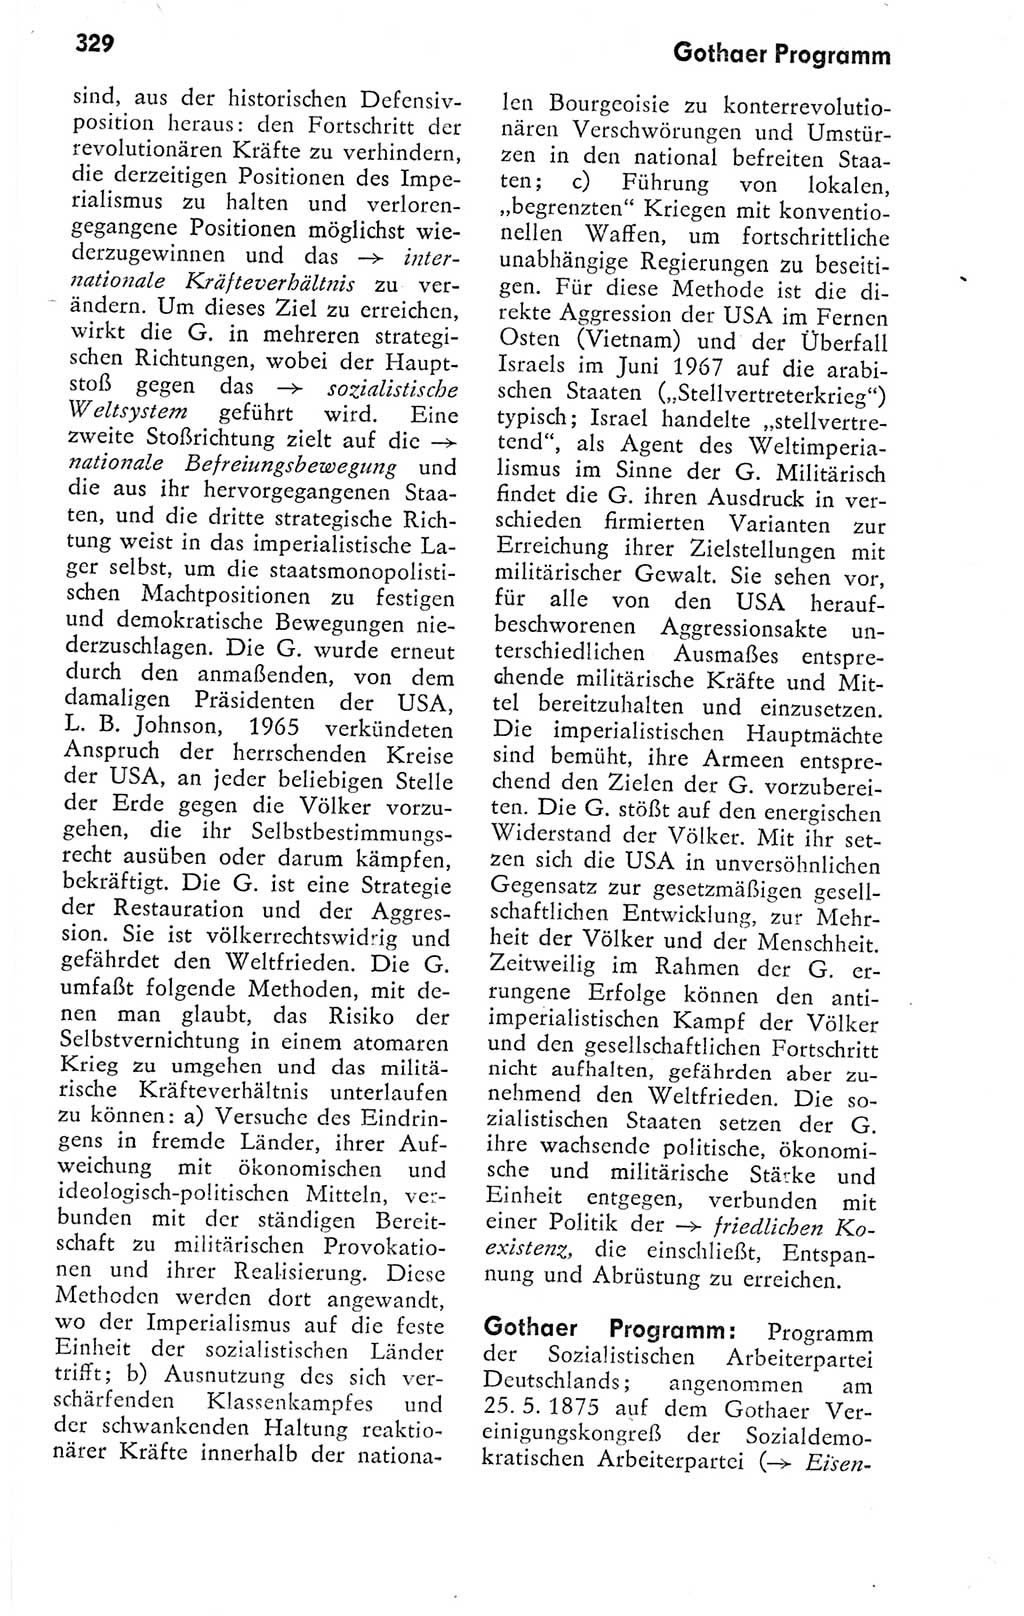 Kleines politisches Wörterbuch [Deutsche Demokratische Republik (DDR)] 1978, Seite 329 (Kl. pol. Wb. DDR 1978, S. 329)